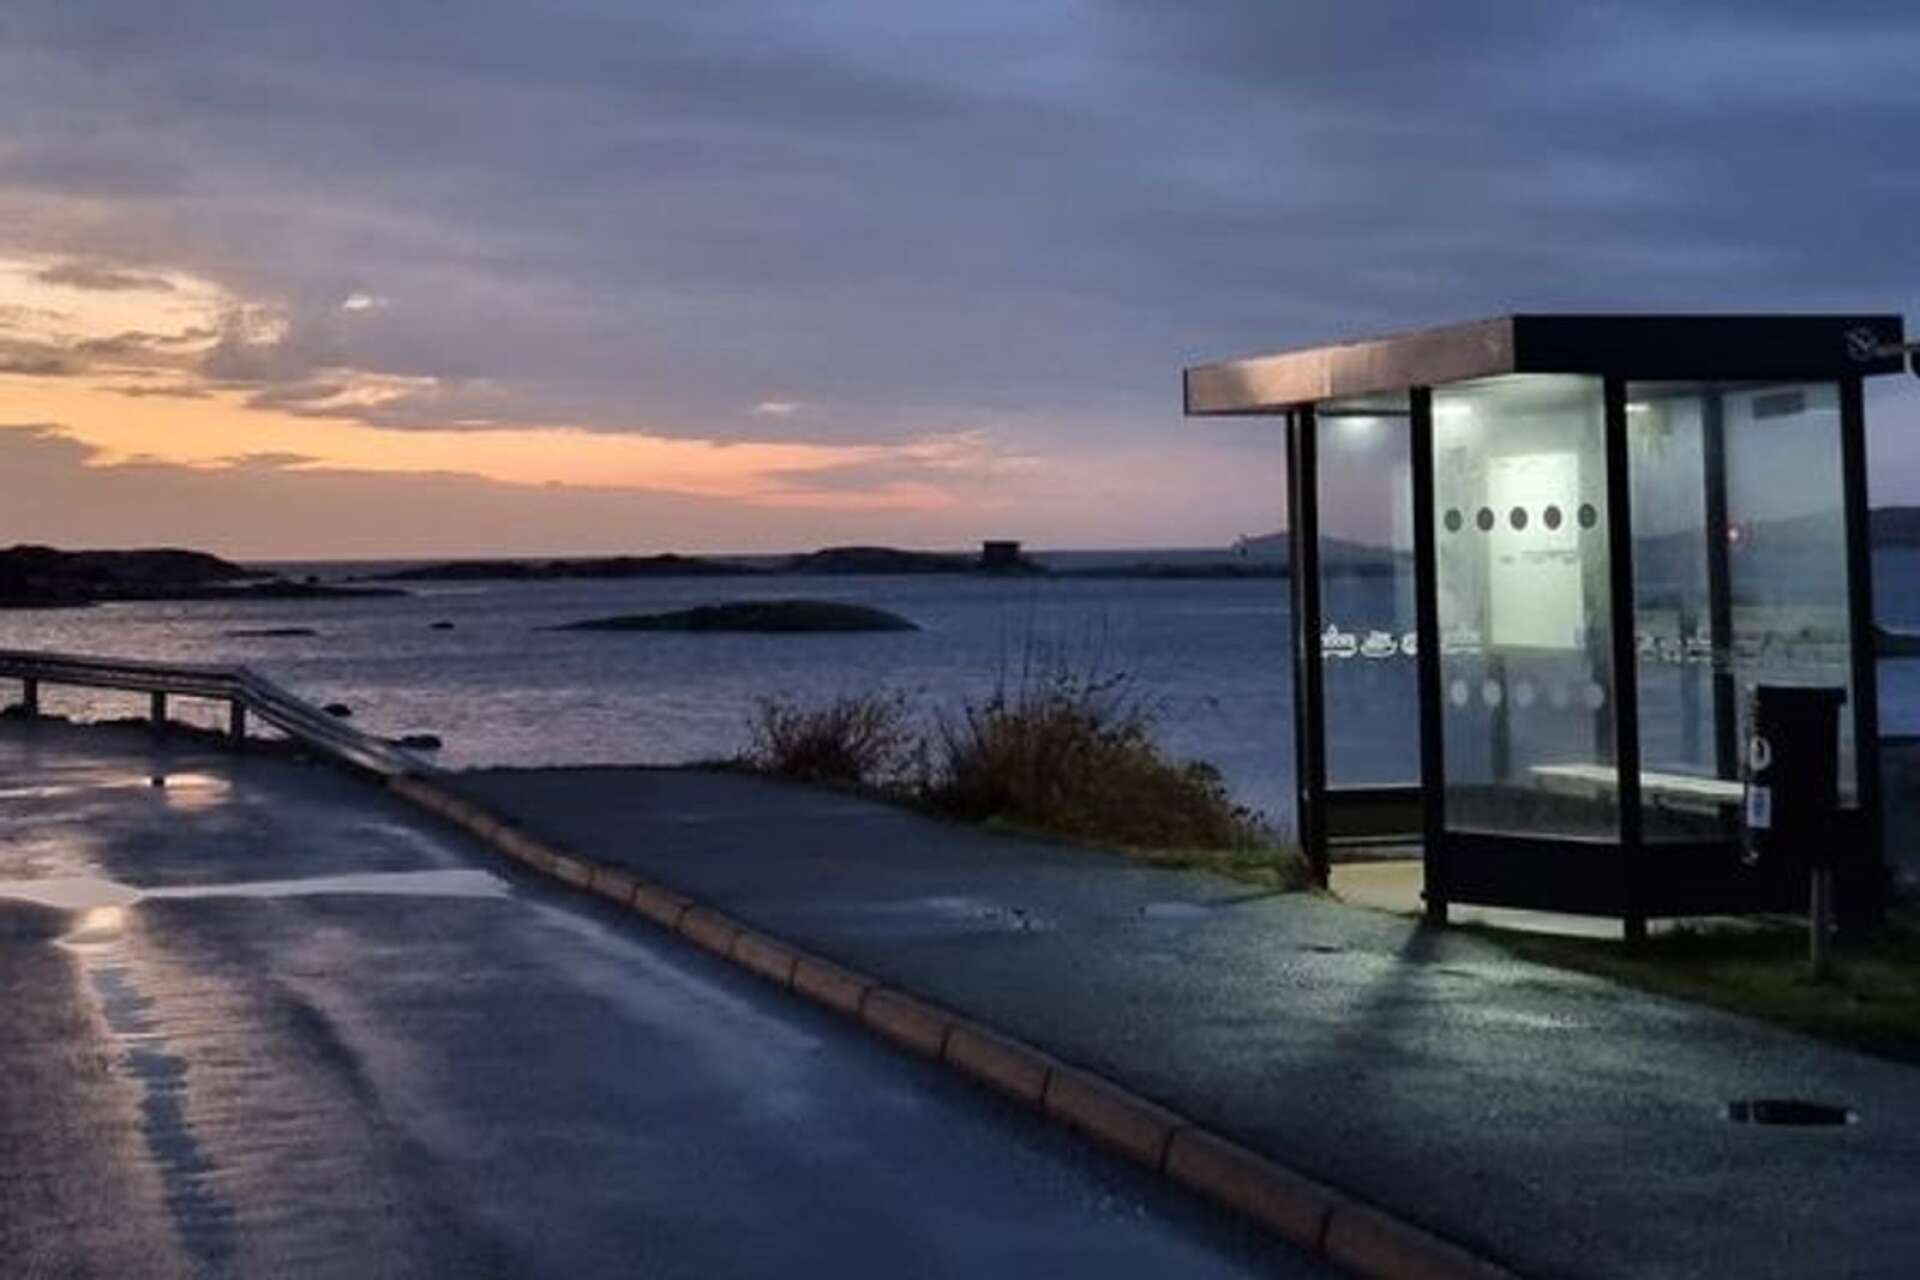 Det vinnande bidraget skickades in av Christina Ivarsson. Det visar hållplatsen Fotö i Öckerö kommun. Bilden visar hållplatsen med hav, moln och klippor i bakgrunden. 